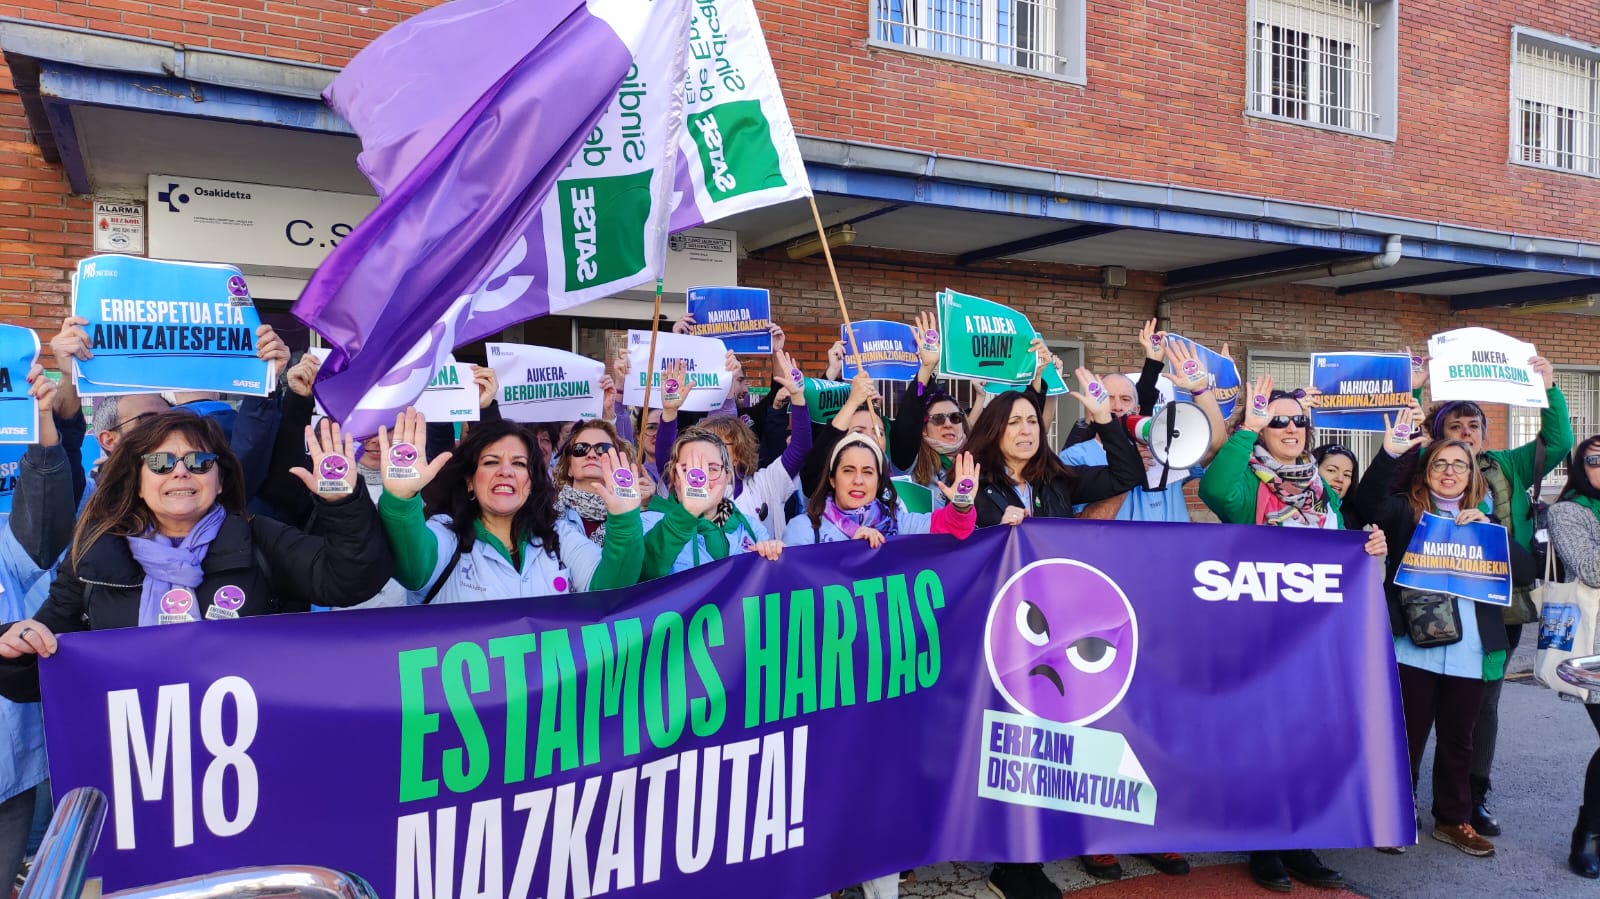 SATSE Euskadik erizainen diskriminazio profesionala ezabatzeko eta berdintasunean aurrera egiteko eskatu die alderdi politikoei